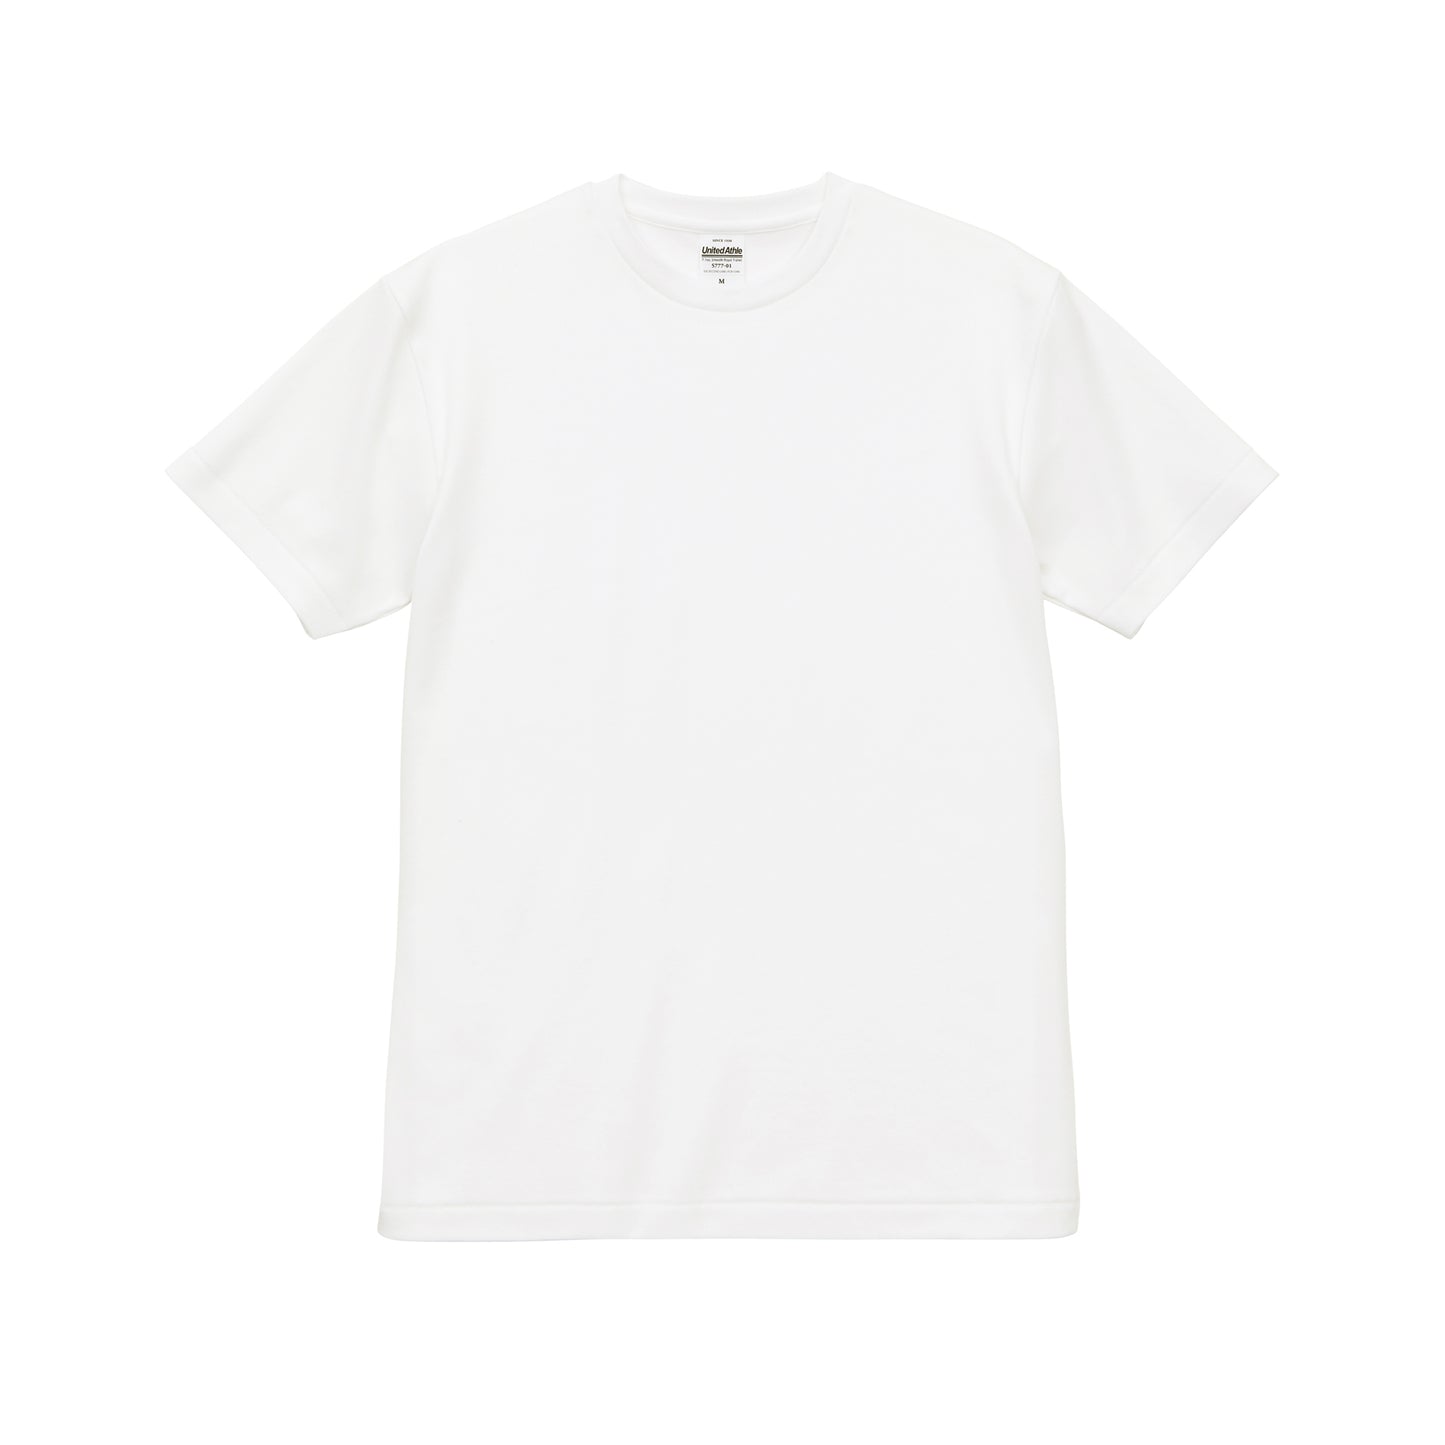 7.1oz スムース ロイヤル Tシャツ (UA-5777-01)